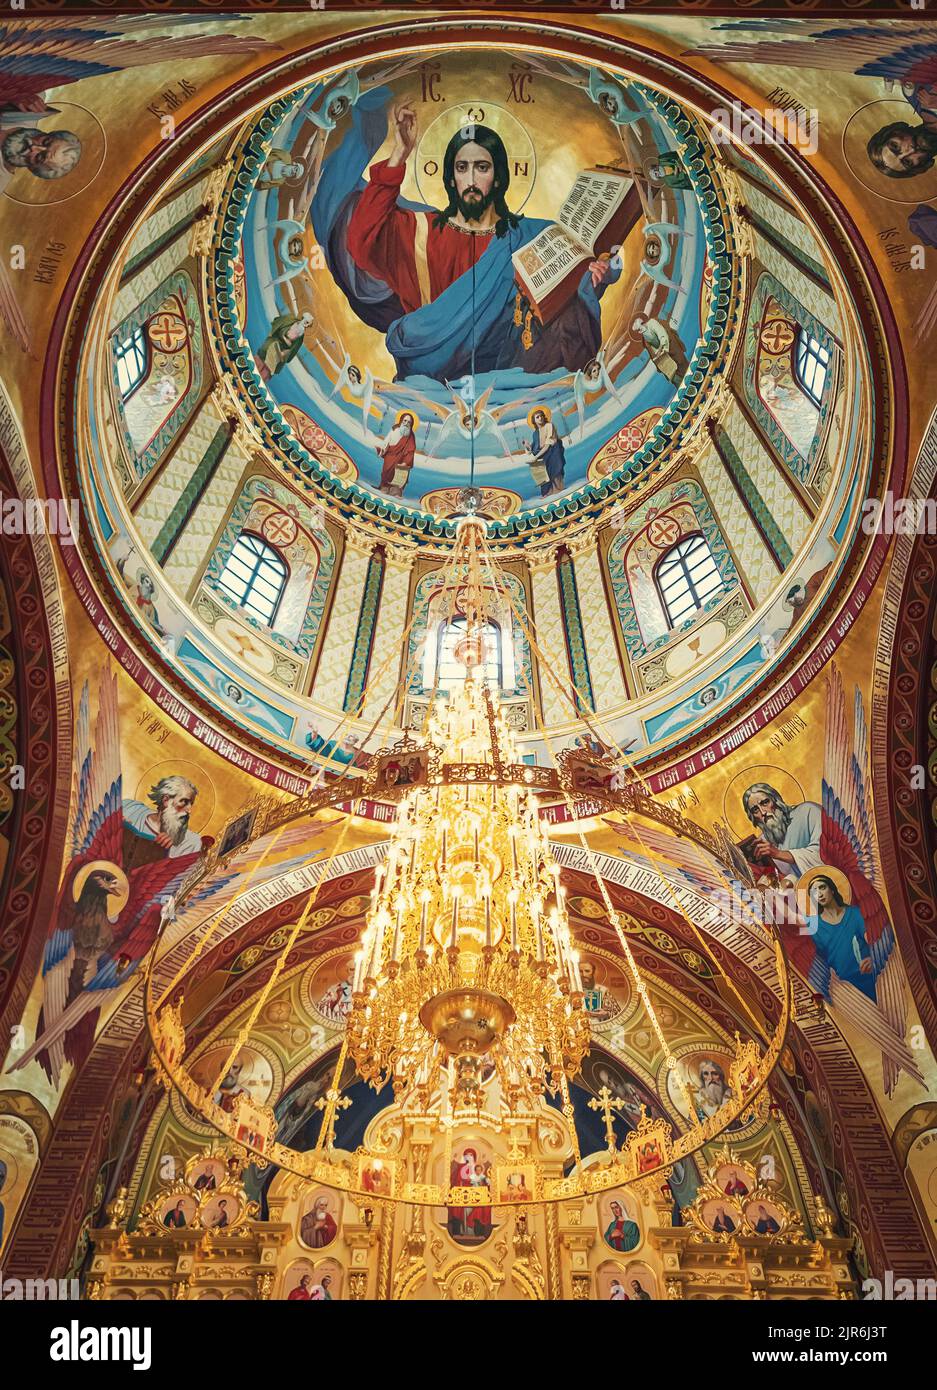 Der Altar mit bemalter Decke des Klosters Curchi, in Orhei, Moldawien. Goldener Kronleuchter mit leuchtenden Lichtern, die an der Kuppel hängen. Verschiedene Heilige i Stockfoto